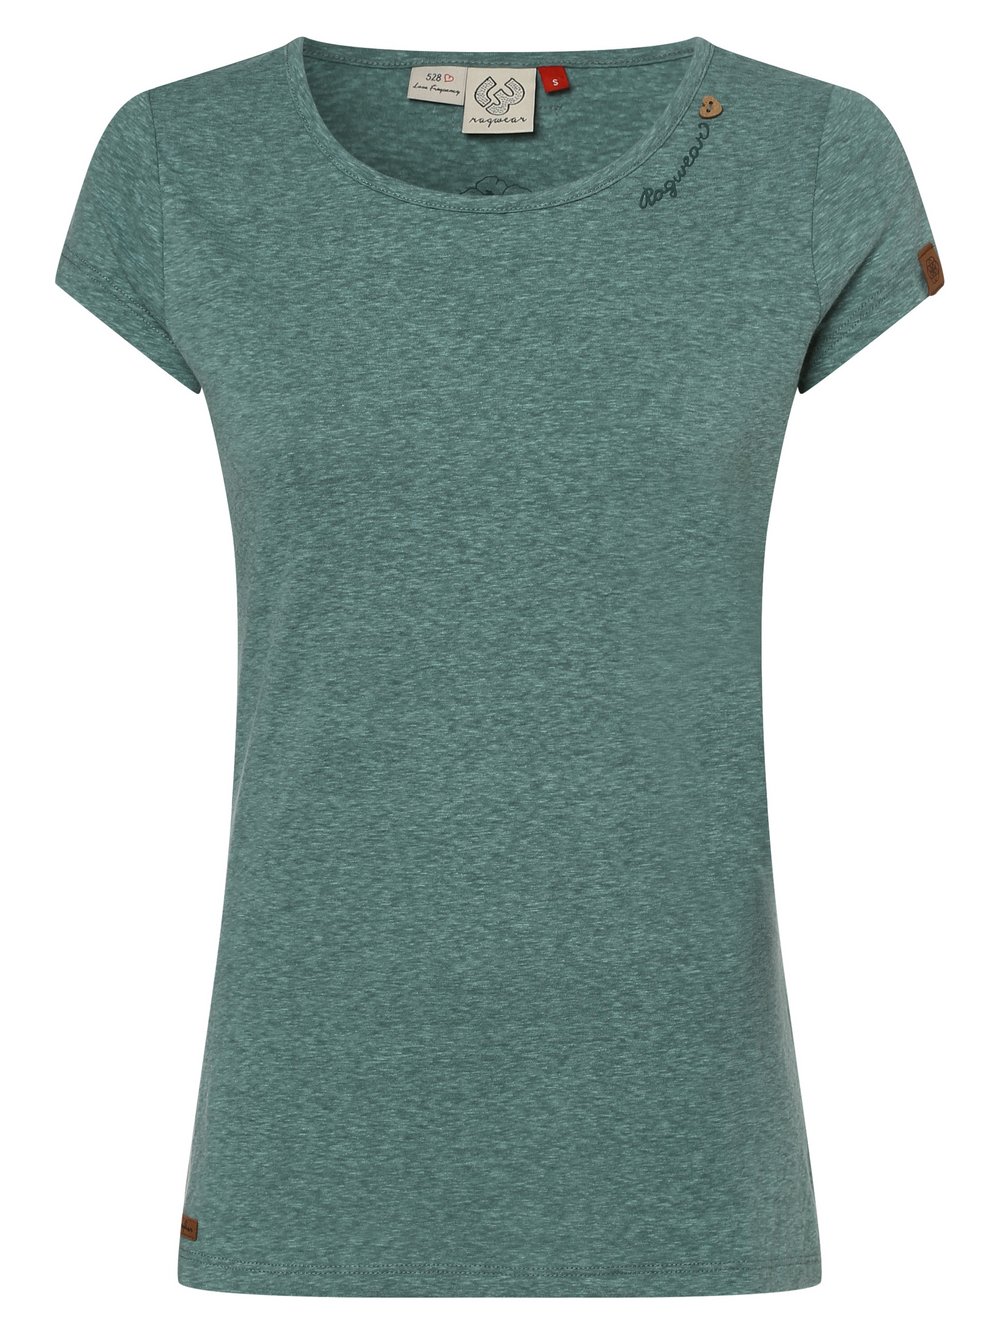 Ragwear - T-shirt damski – Mint, zielony